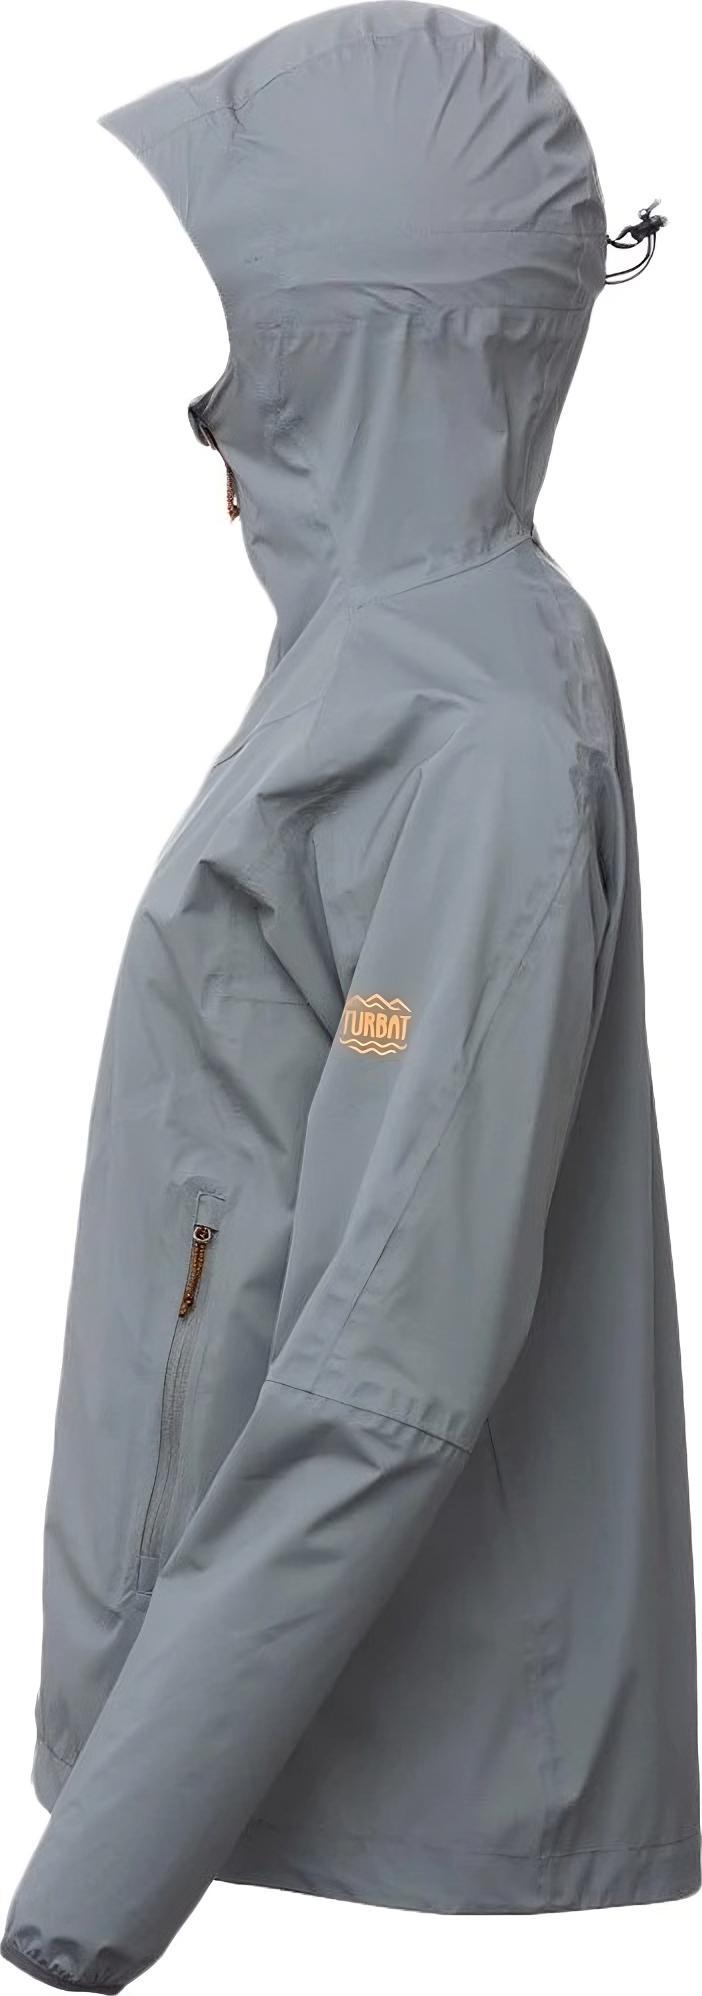 Куртка жіноча Turbat Reva Wmn steel gray XL сірийфото4